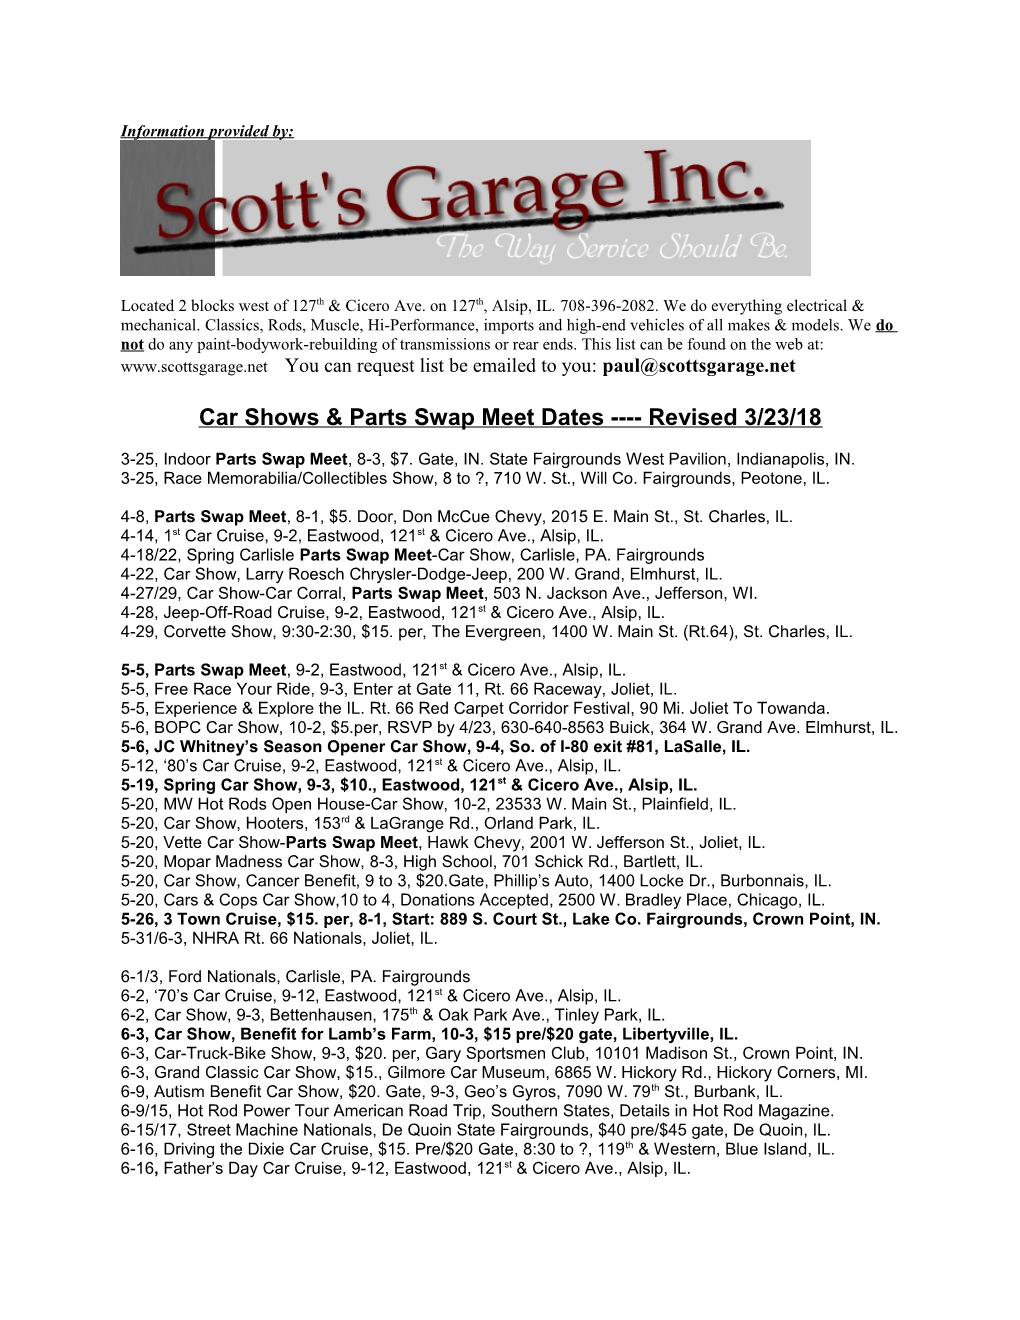 Car Shows & Parts Swap Meet Dates Revised 3/23/18